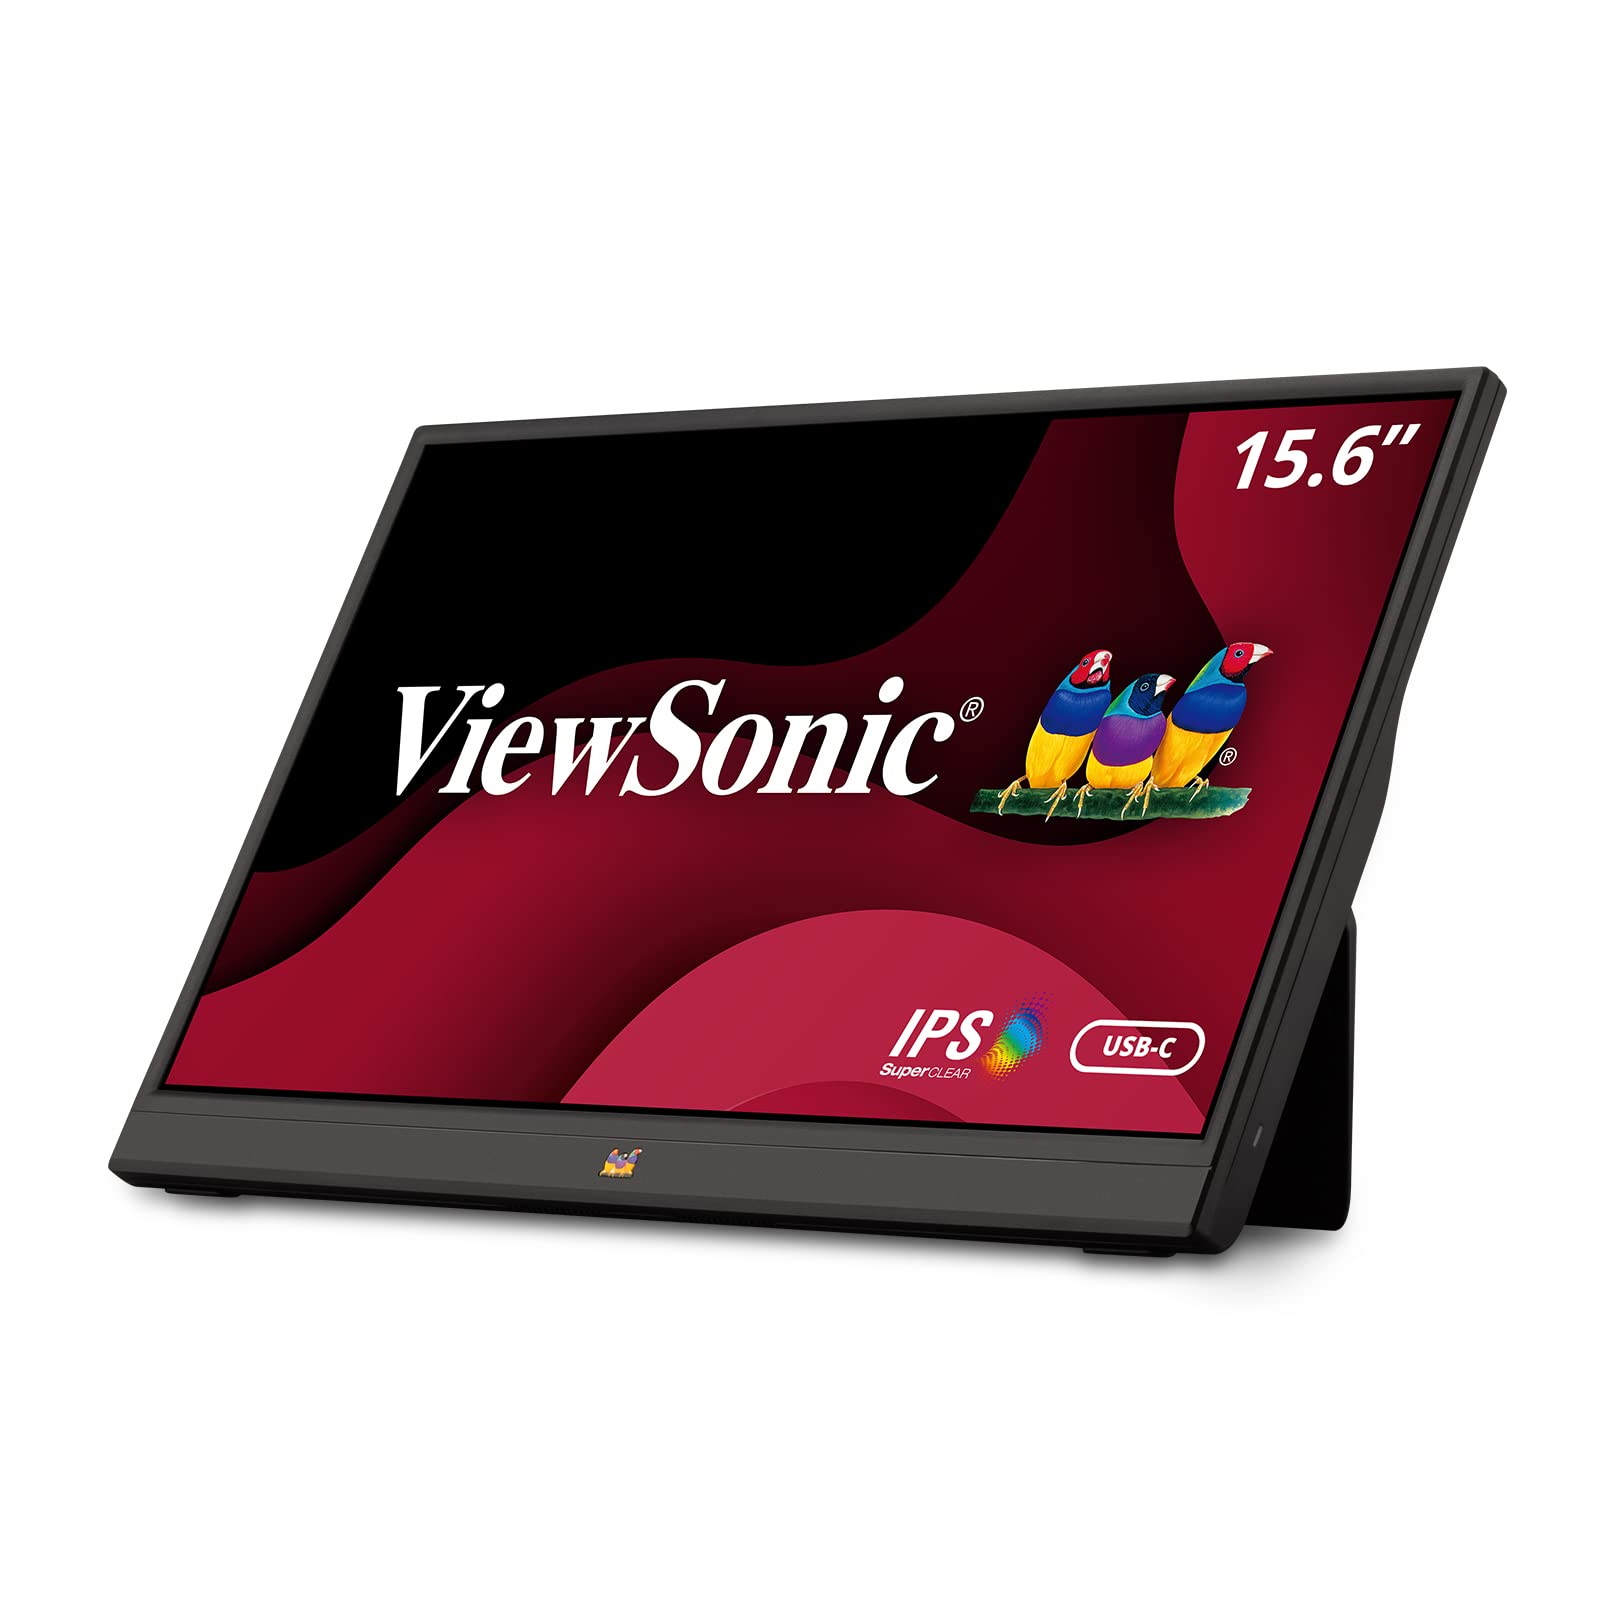 Viewsonic VA1655 15.6 Inch 1080p Portable IPS Monitor w...